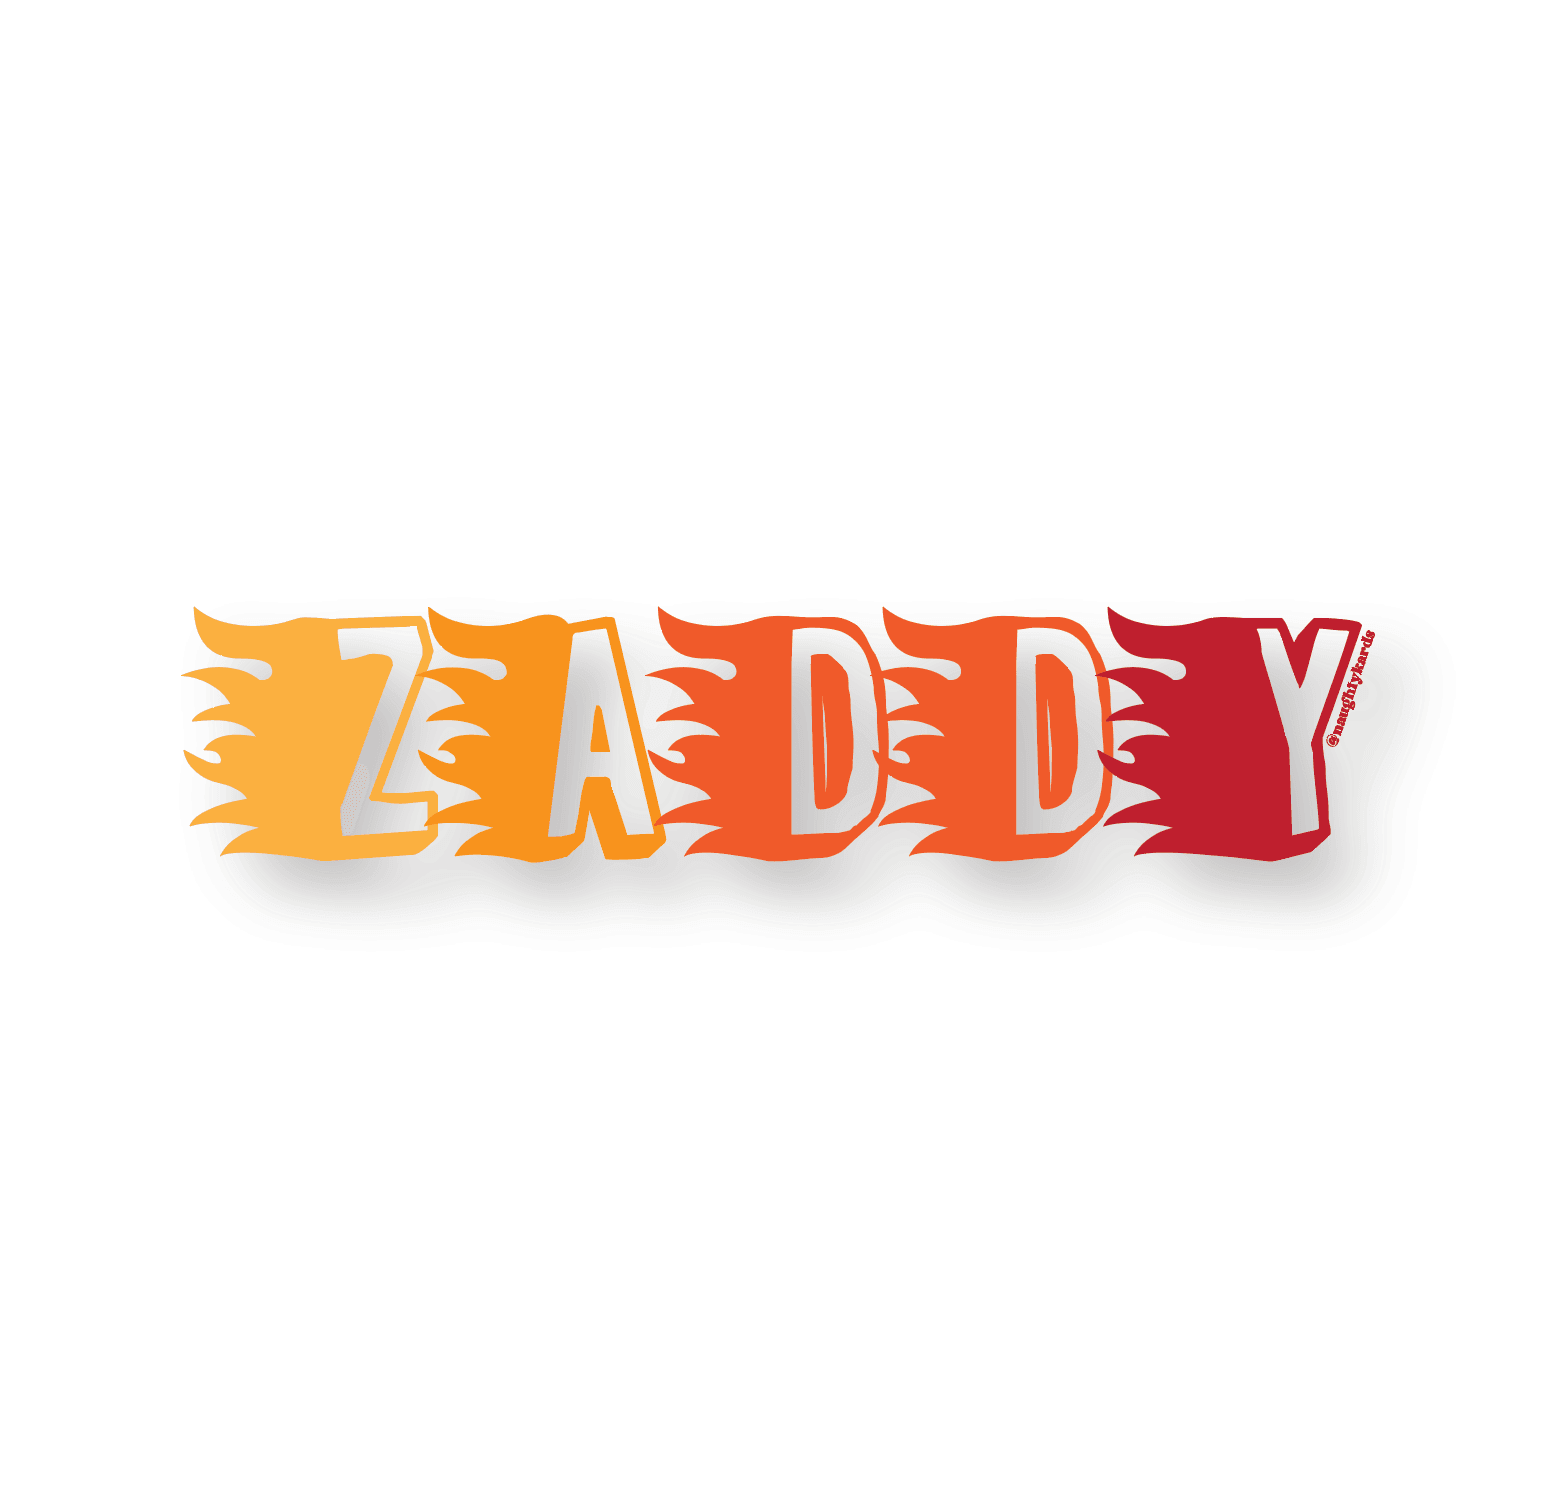 Zaddy Naughty Sticker - KushKards